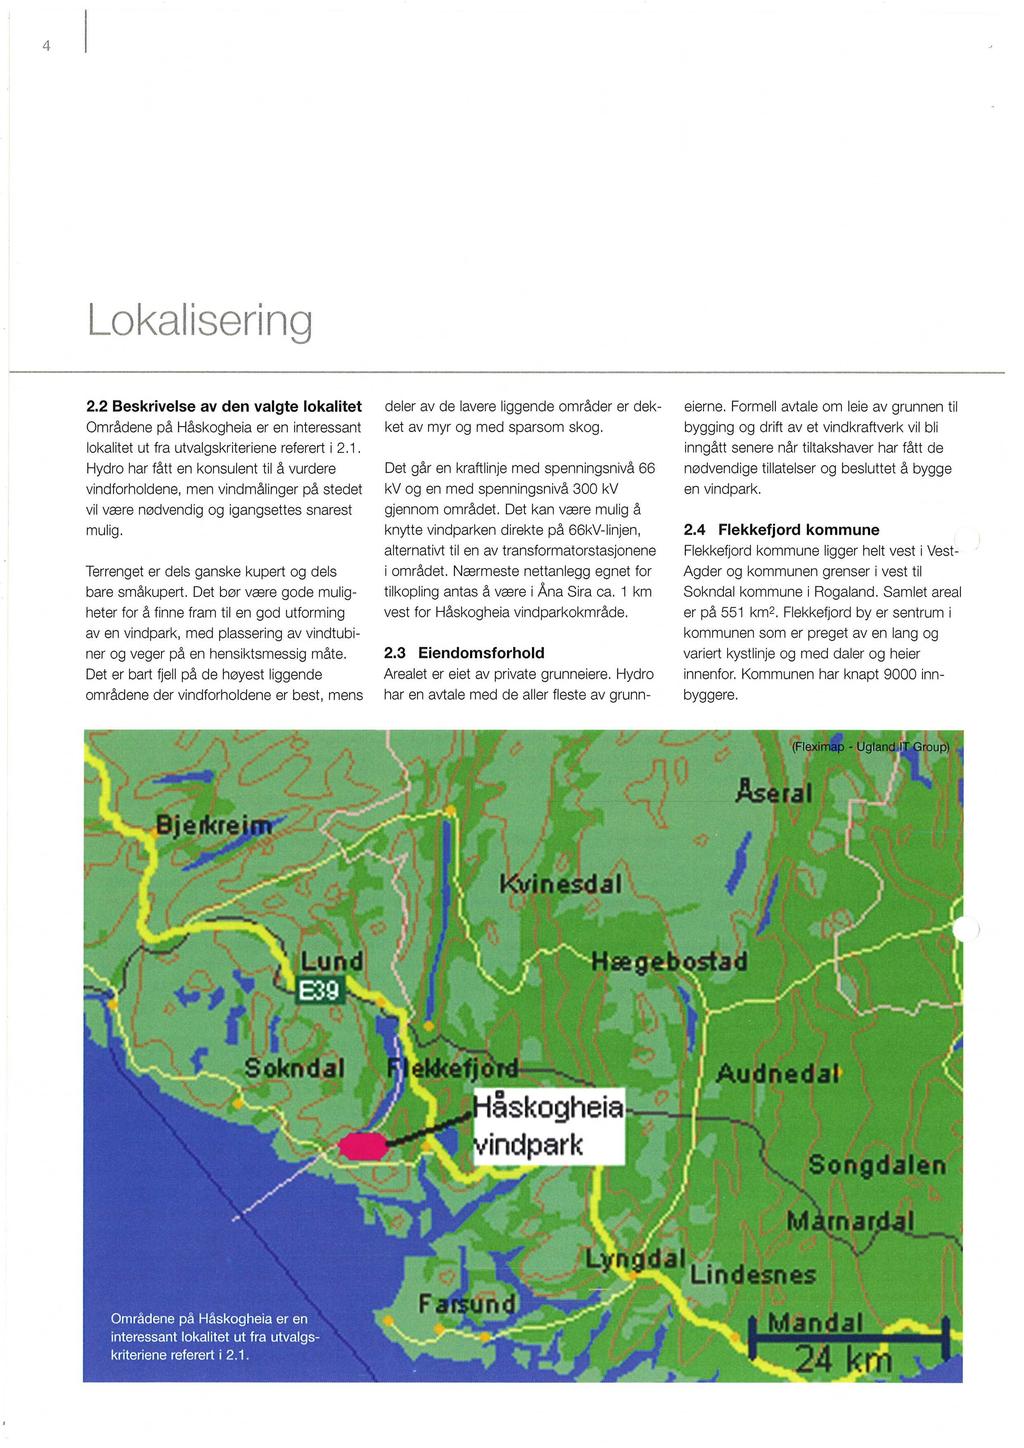 2.2 Beskrivelse av den valgte lokalitet Områdene på Håskogheia er en interessant lokalitet ut fra utvalgskriteriene referert i 2.1.